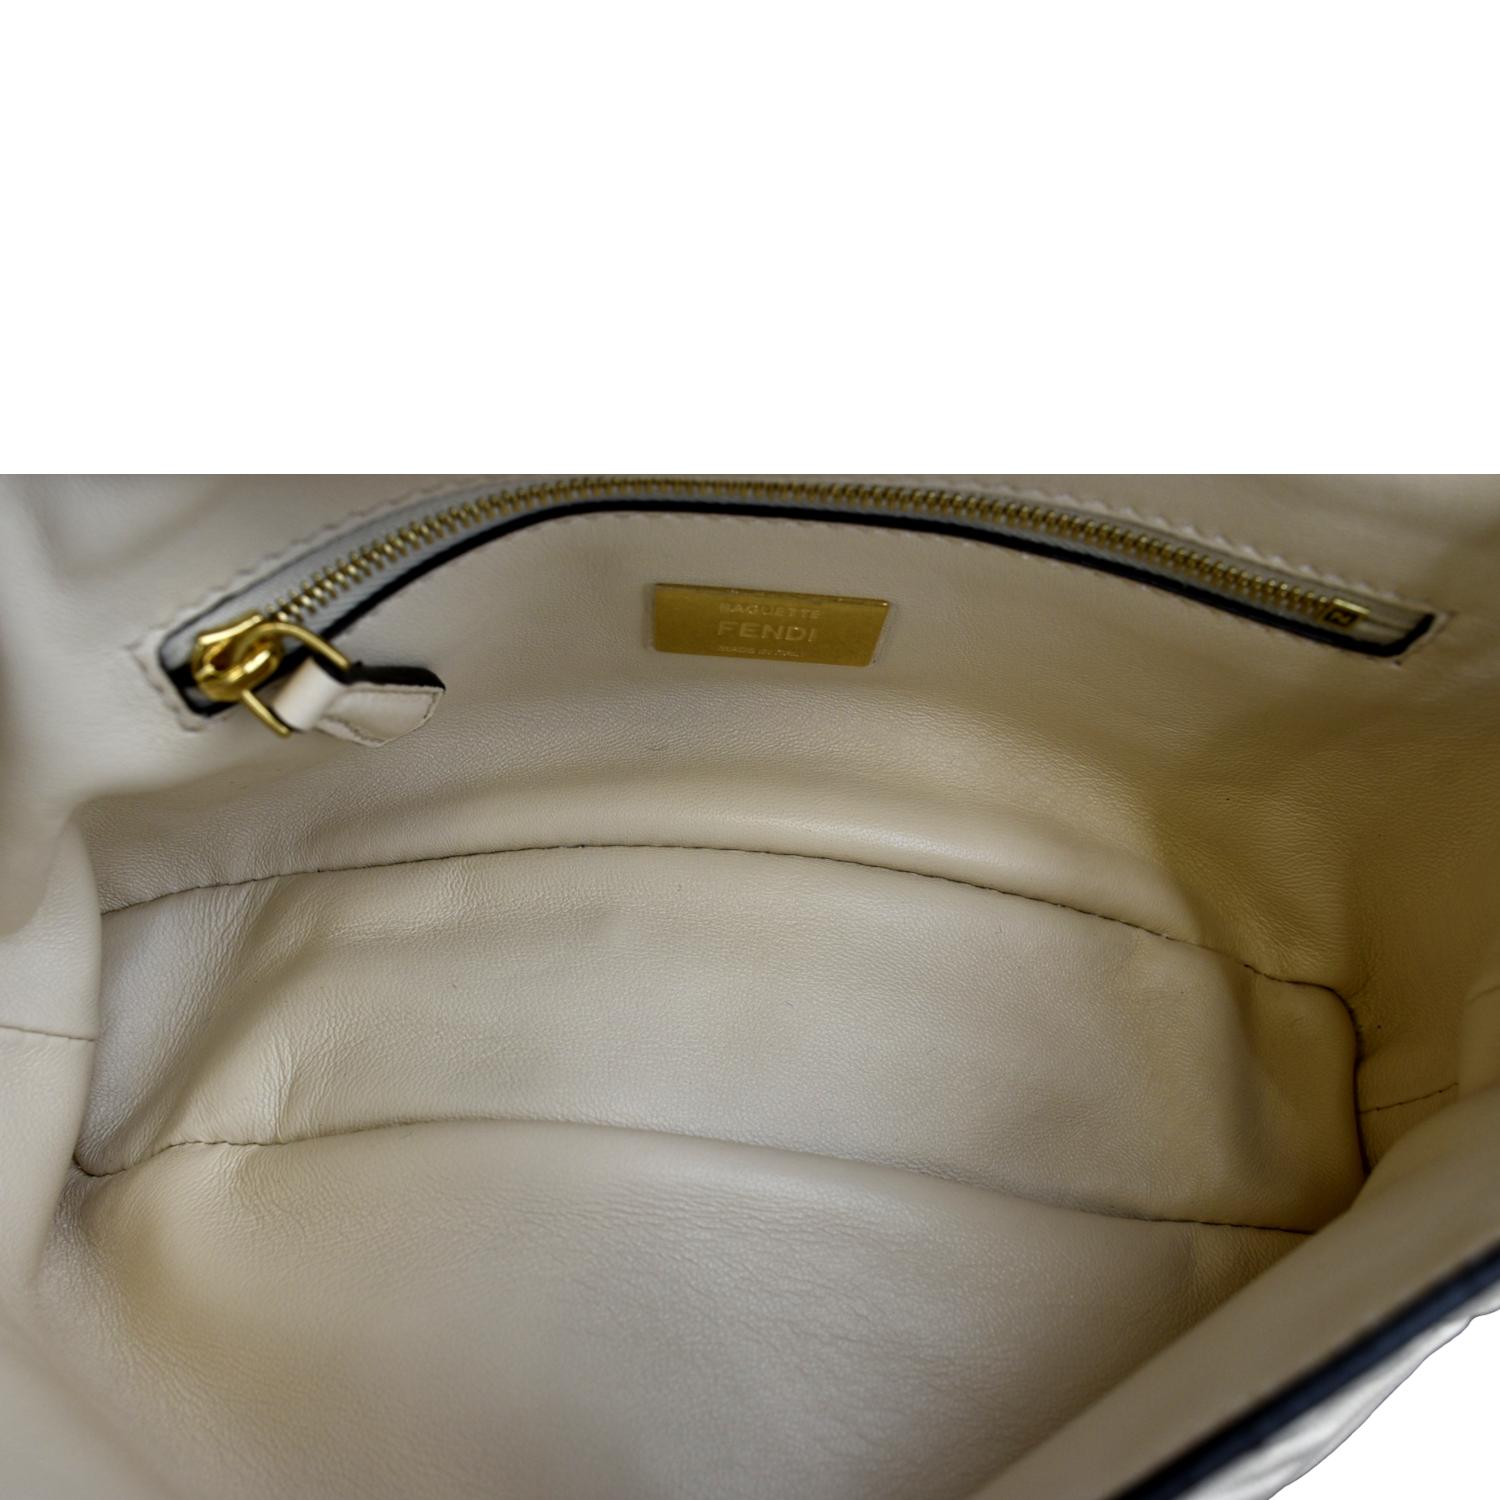 FENDI Baguette Leather Chain Shoulder Bag Light Beige